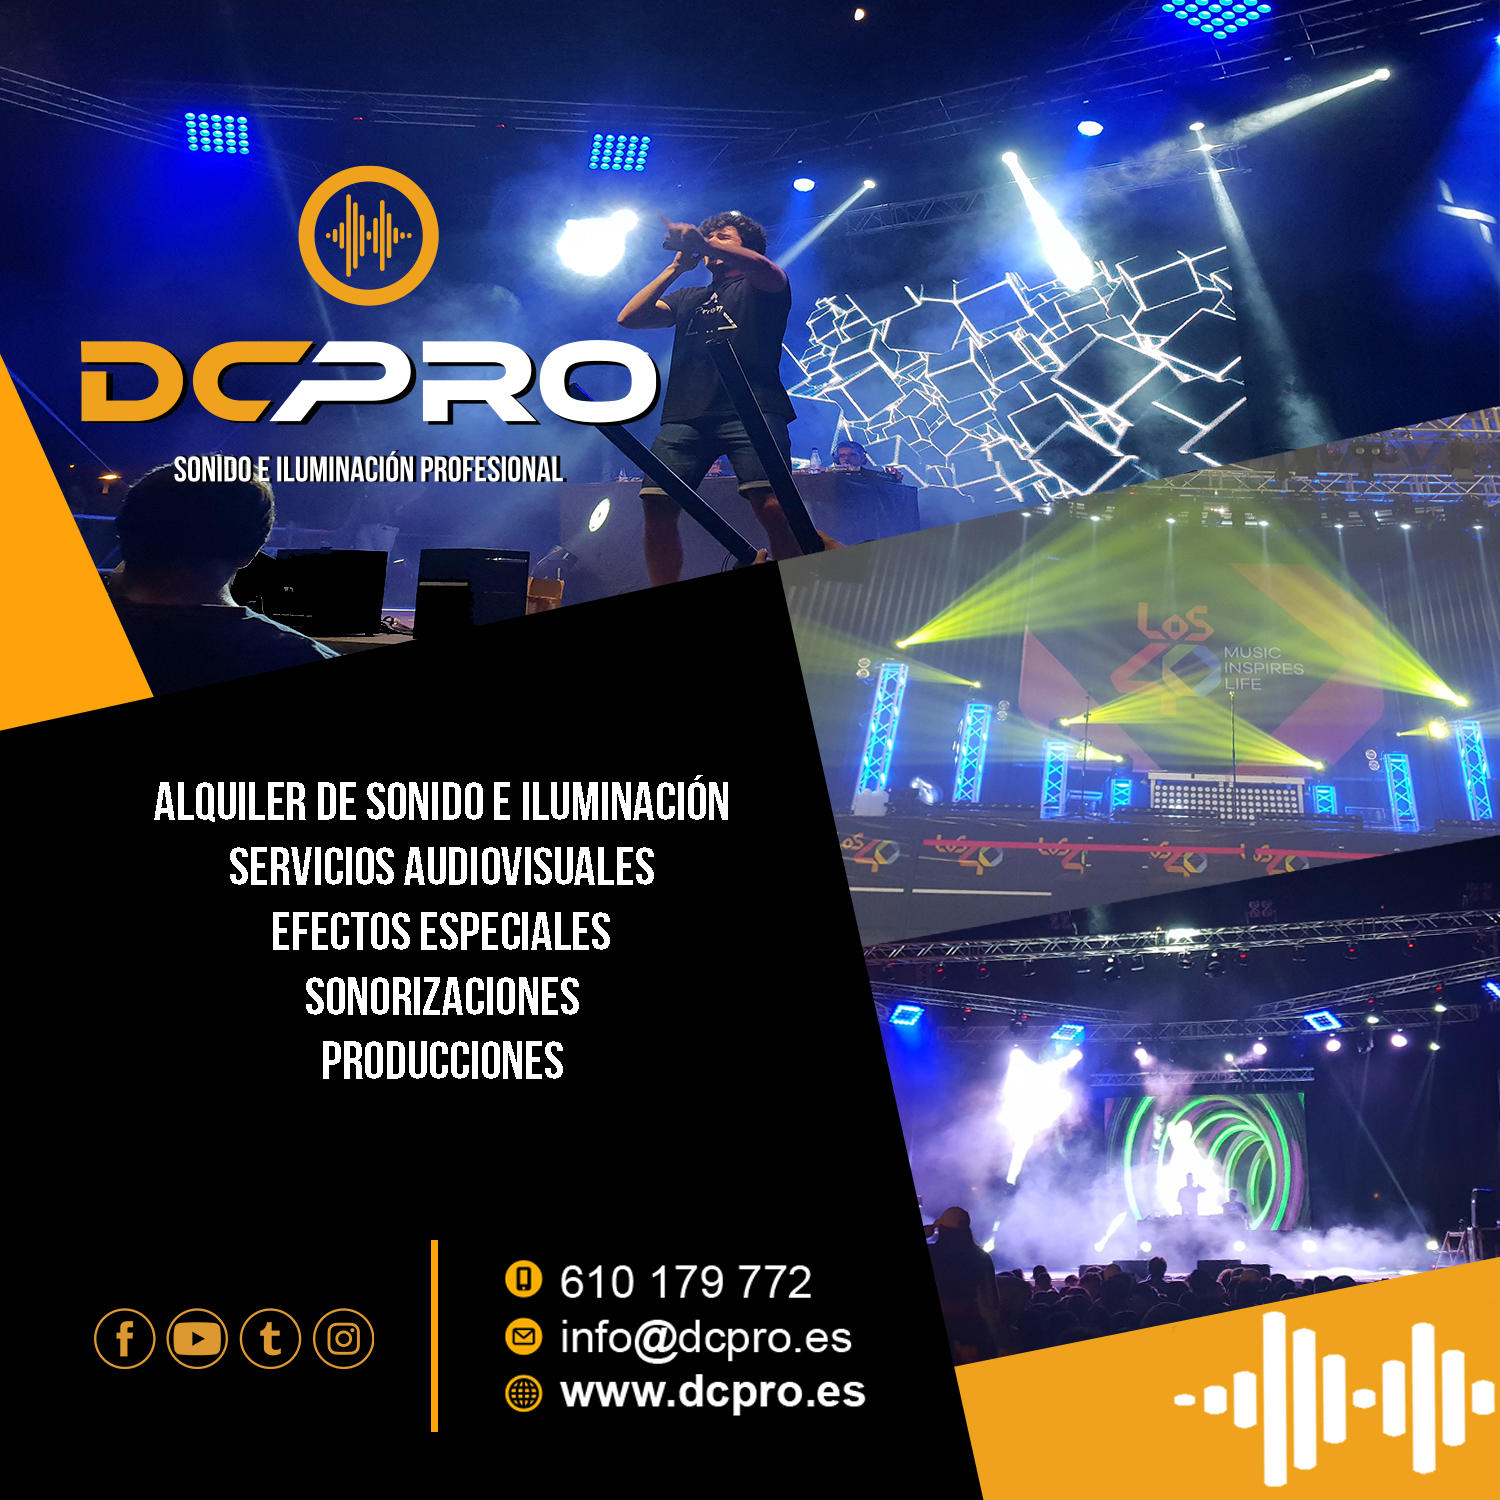 Images DCPRO S.L. Sonido e Iluminación Profesional